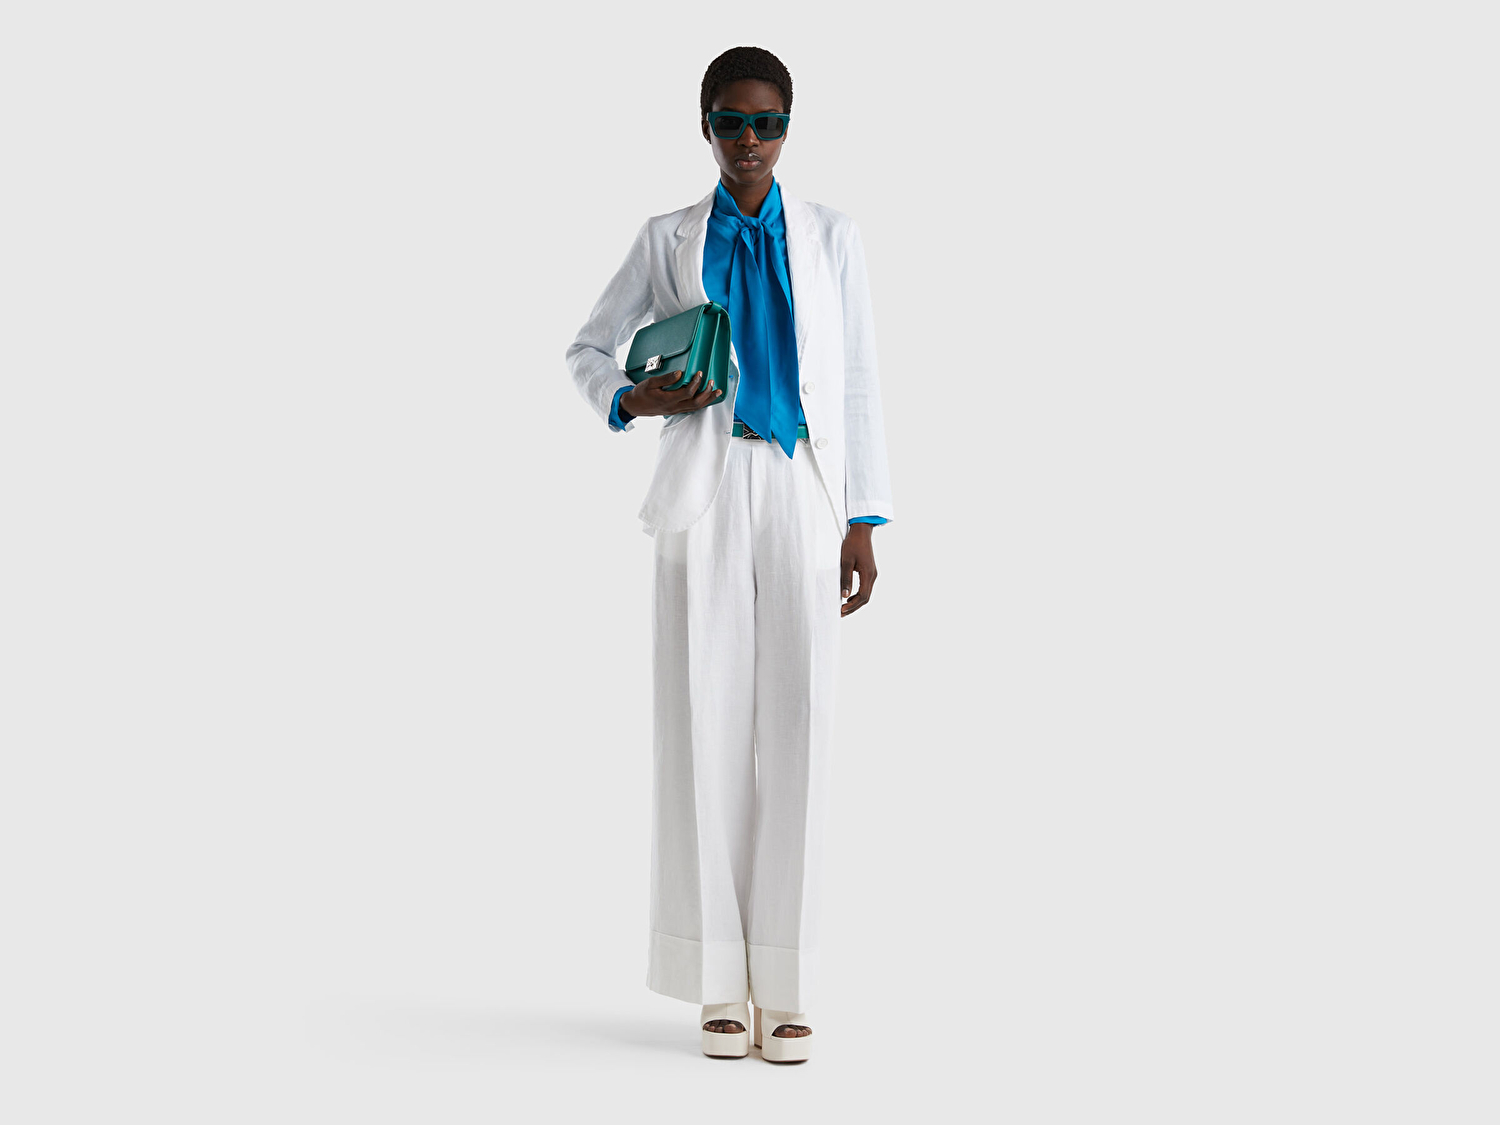 Benetton Kadın Beyaz %100 Keten Beli Lastikli Geniş Kesim Pantolon